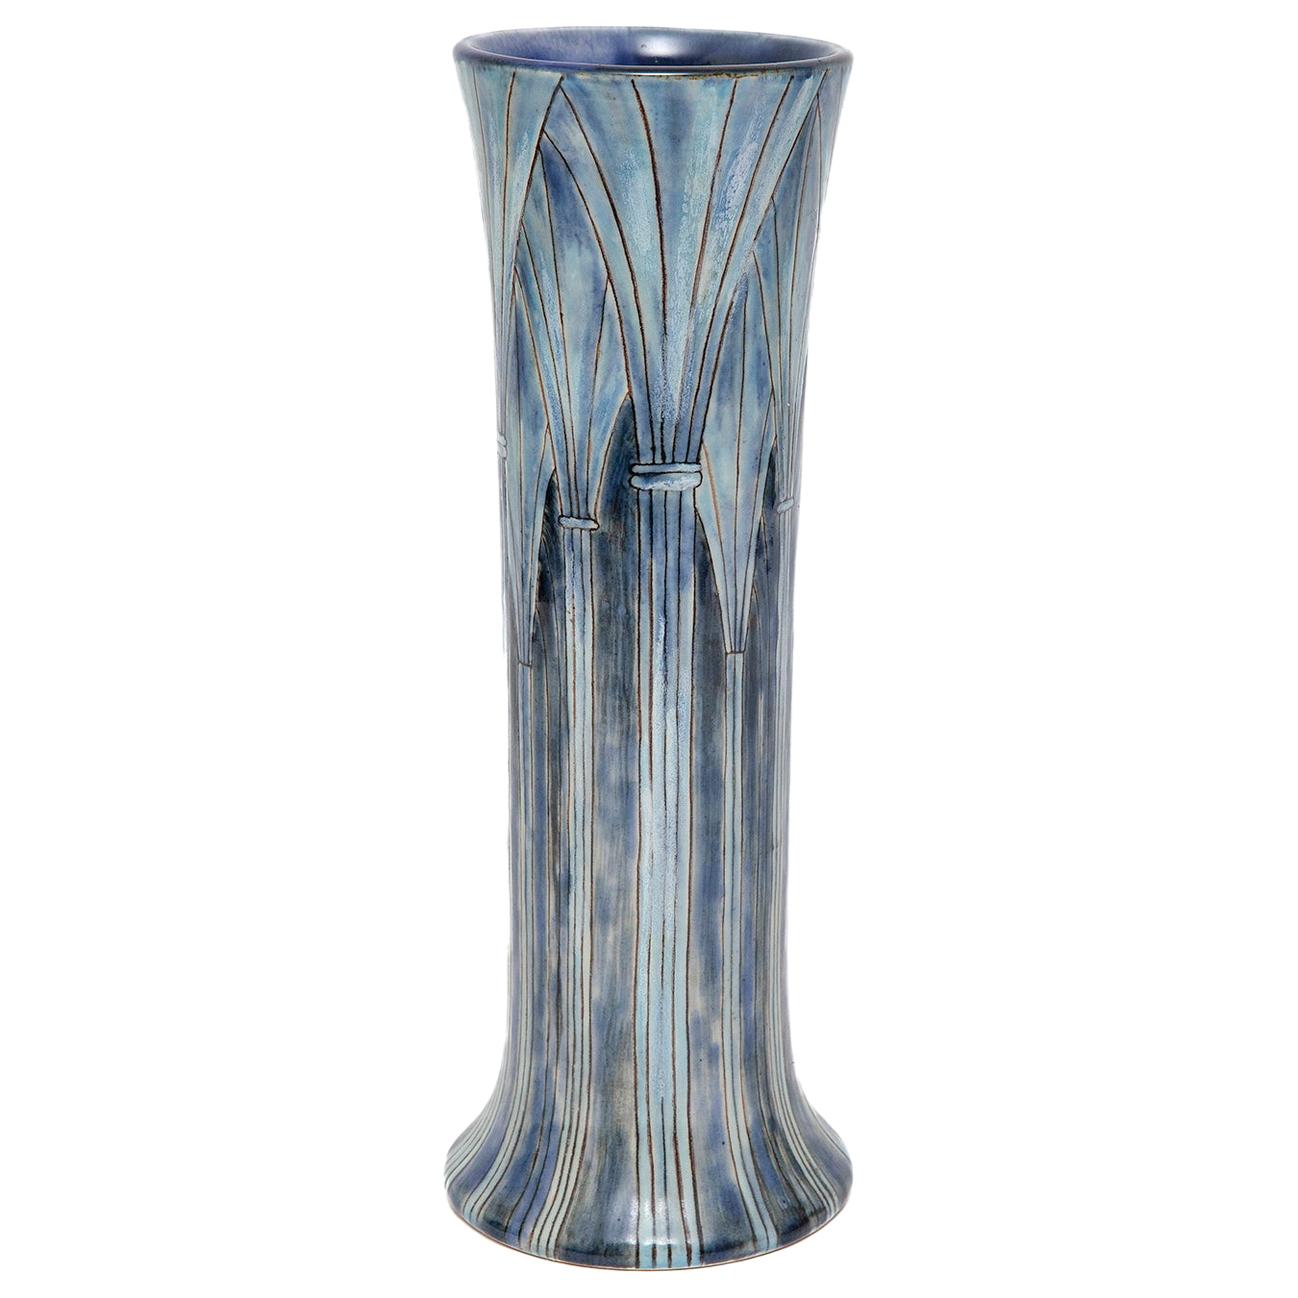 Vase en grès bleu cathédrale Cobridge par Samantha Johnson Architectural